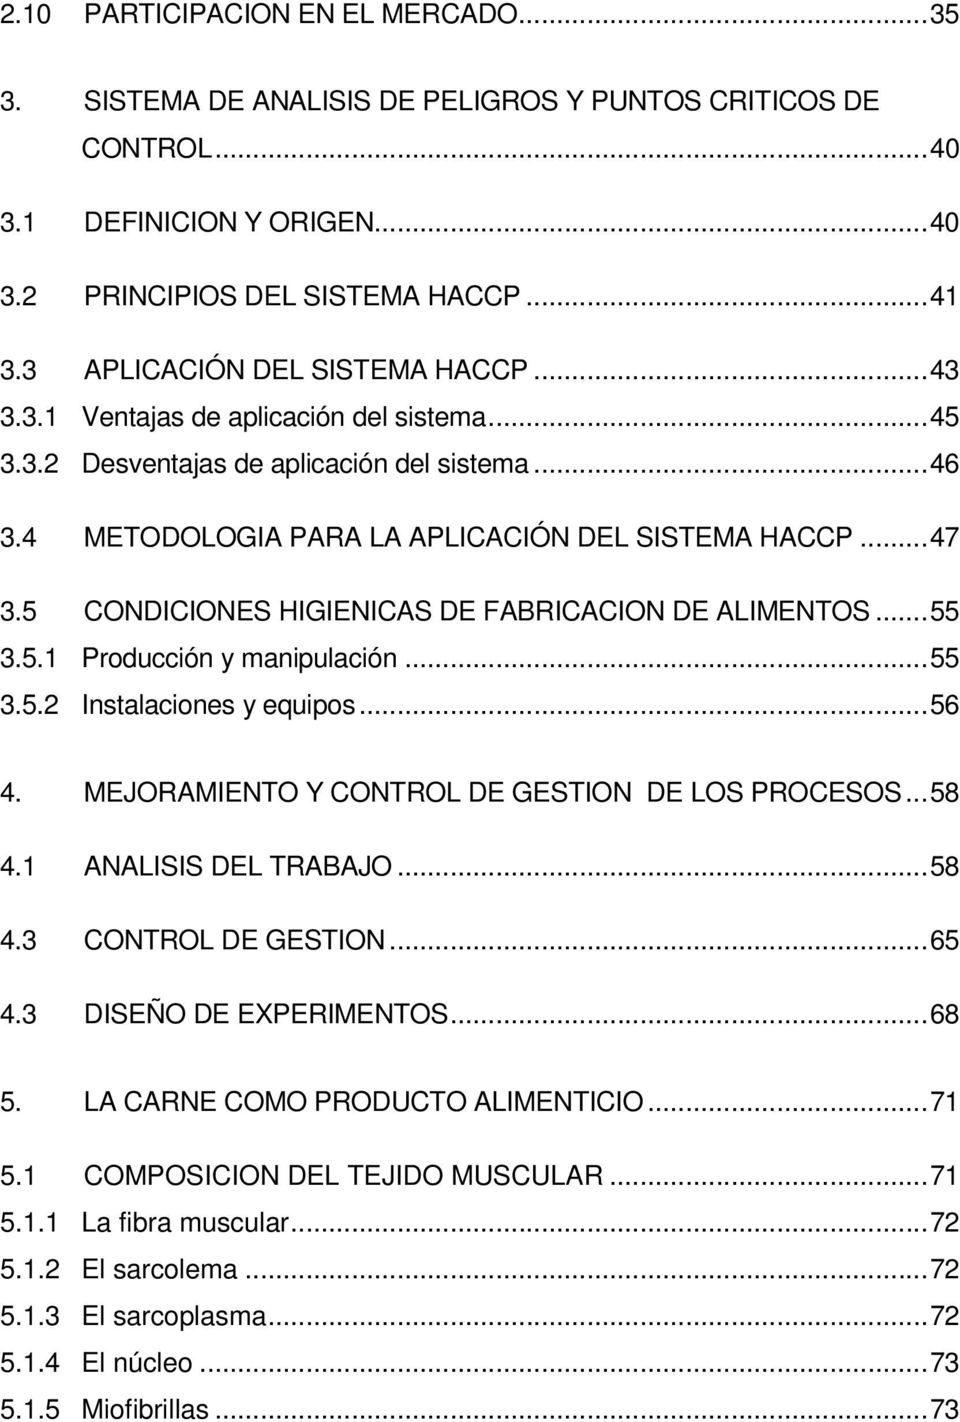 5 CONDICIONES HIGIENICAS DE FABRICACION DE ALIMENTOS...55 3.5.1 Producción y manipulación...55 3.5.2 Instalaciones y equipos...56 4. MEJORAMIENTO Y CONTROL DE GESTION DE LOS PROCESOS...58 4.